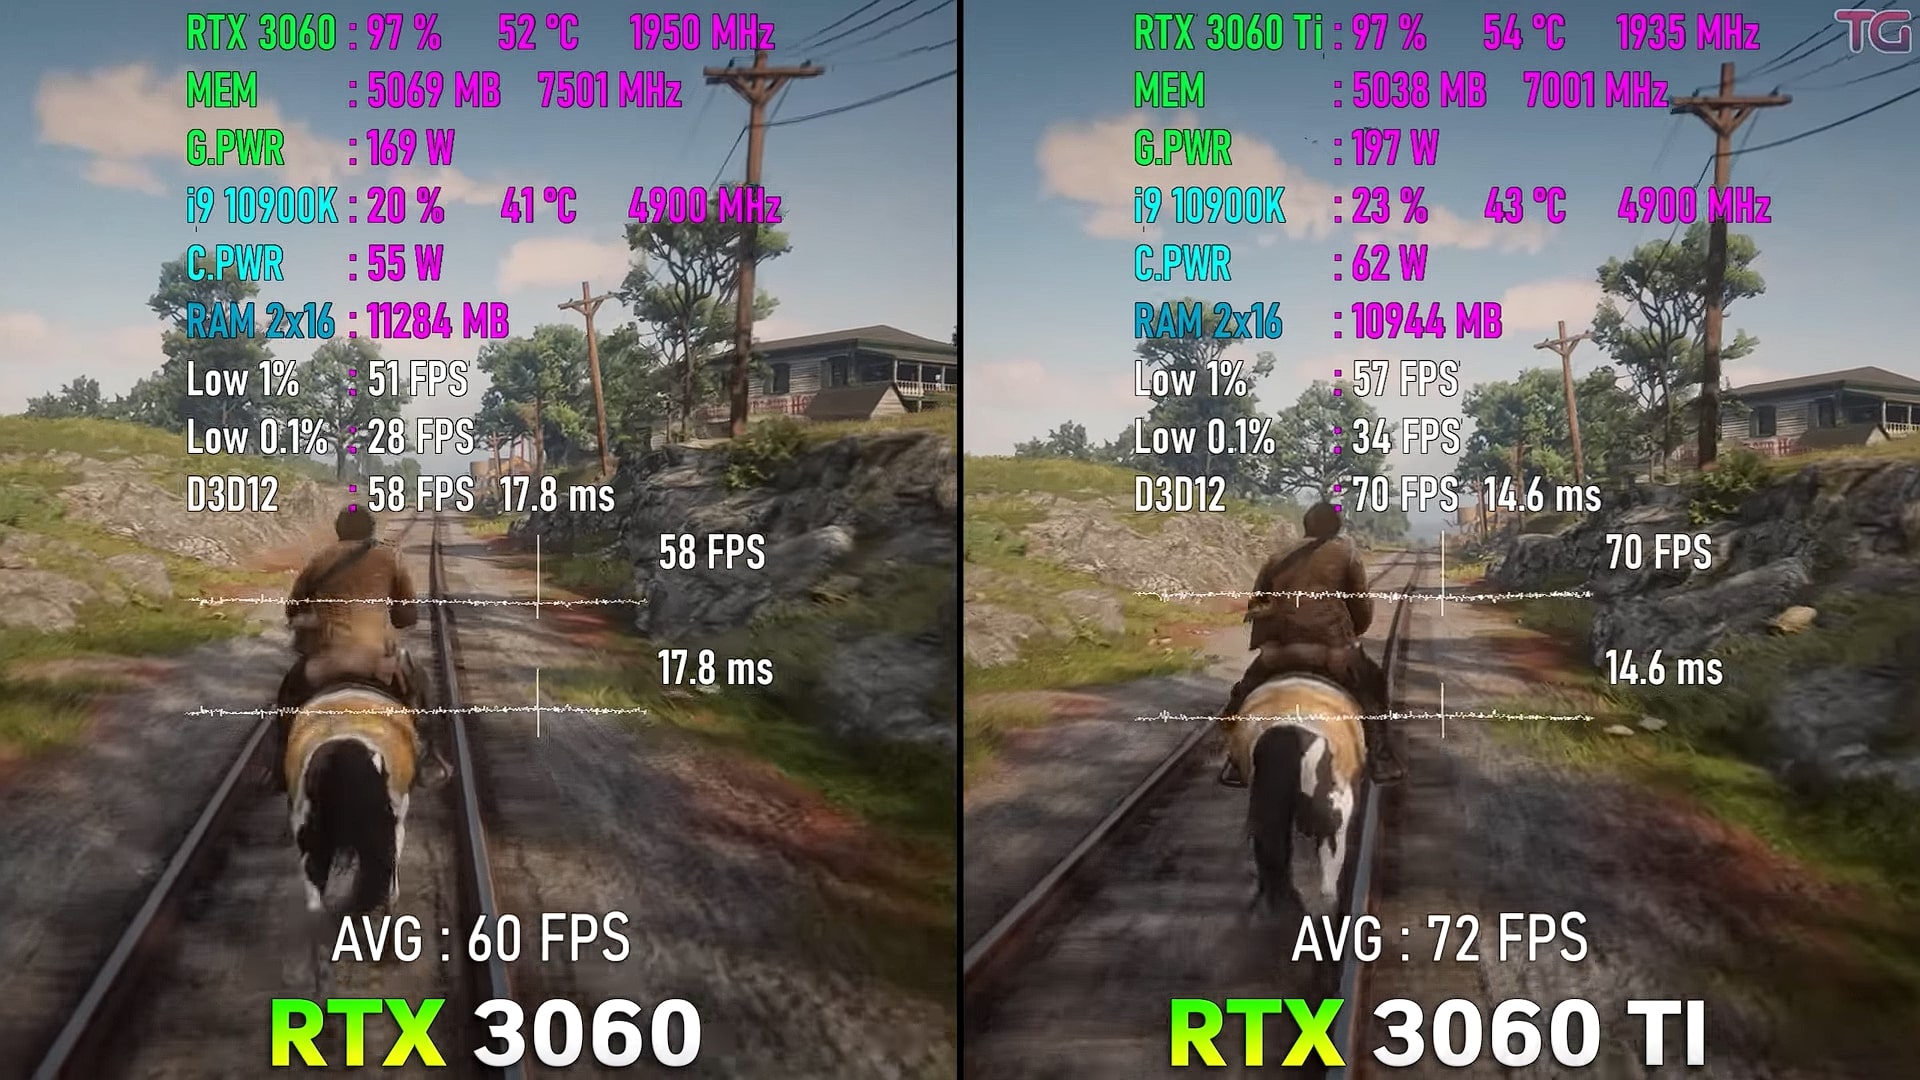 RTX 3060 Vs. RTX 3060 Ti comparision Red Dead Redemption 2 